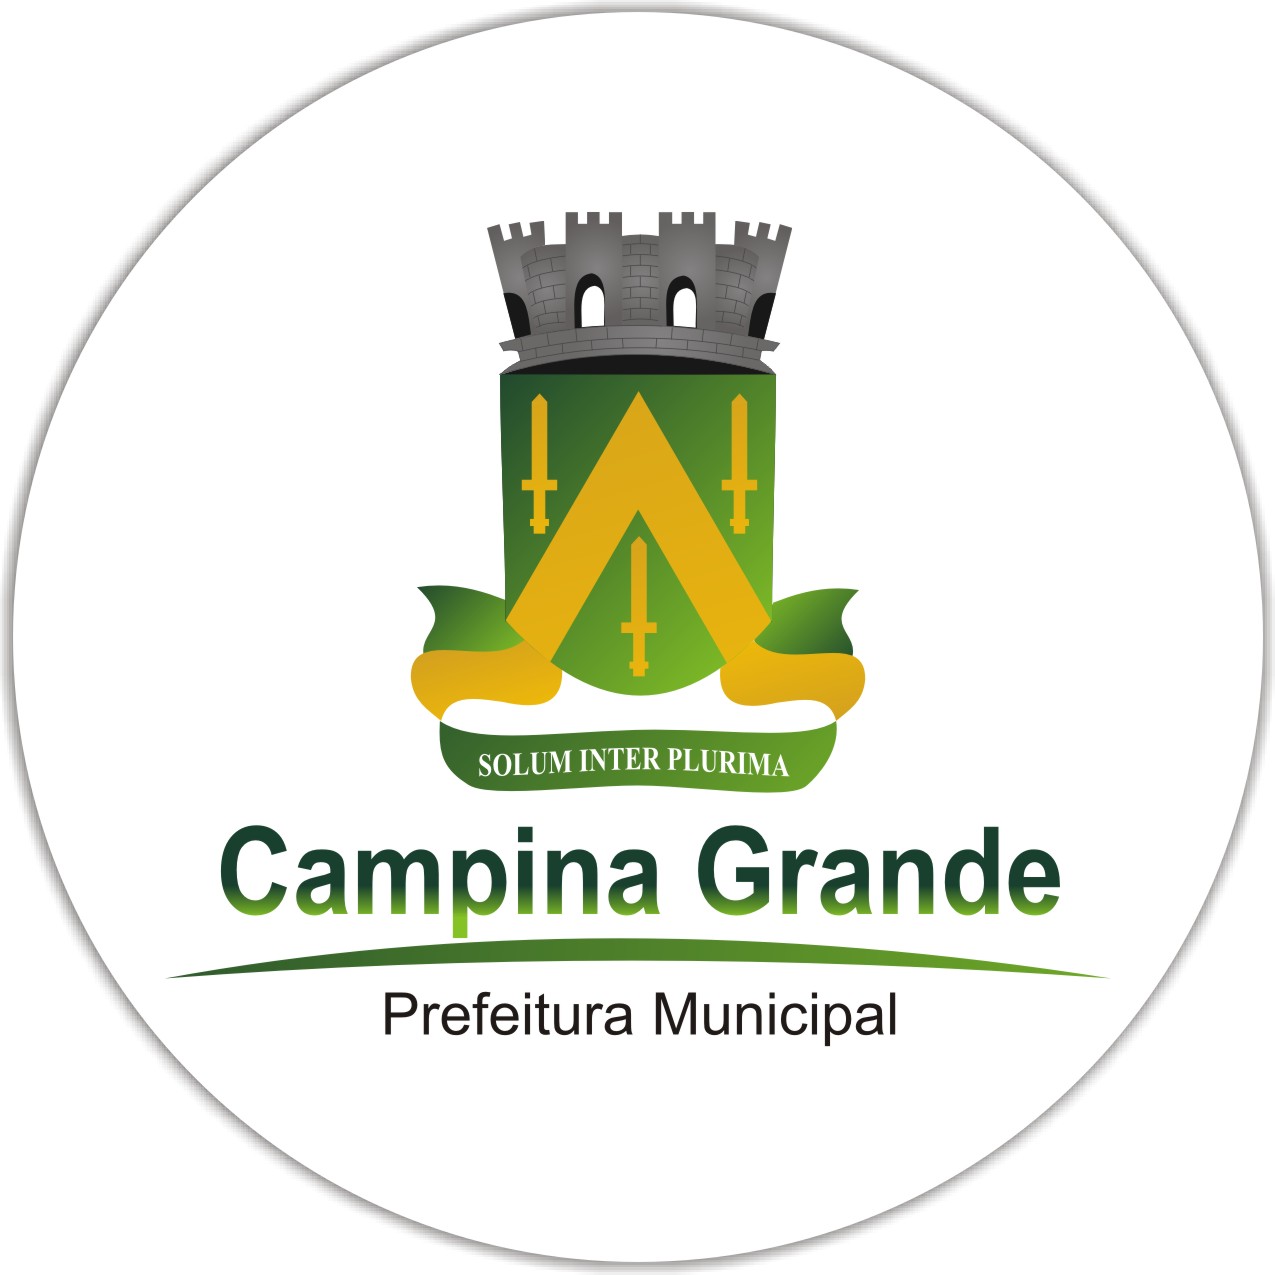 Concurso da Prefeitura de Campina Grande PB 2014 – Vagas, Inscrição, Edital de Abertura e Provas